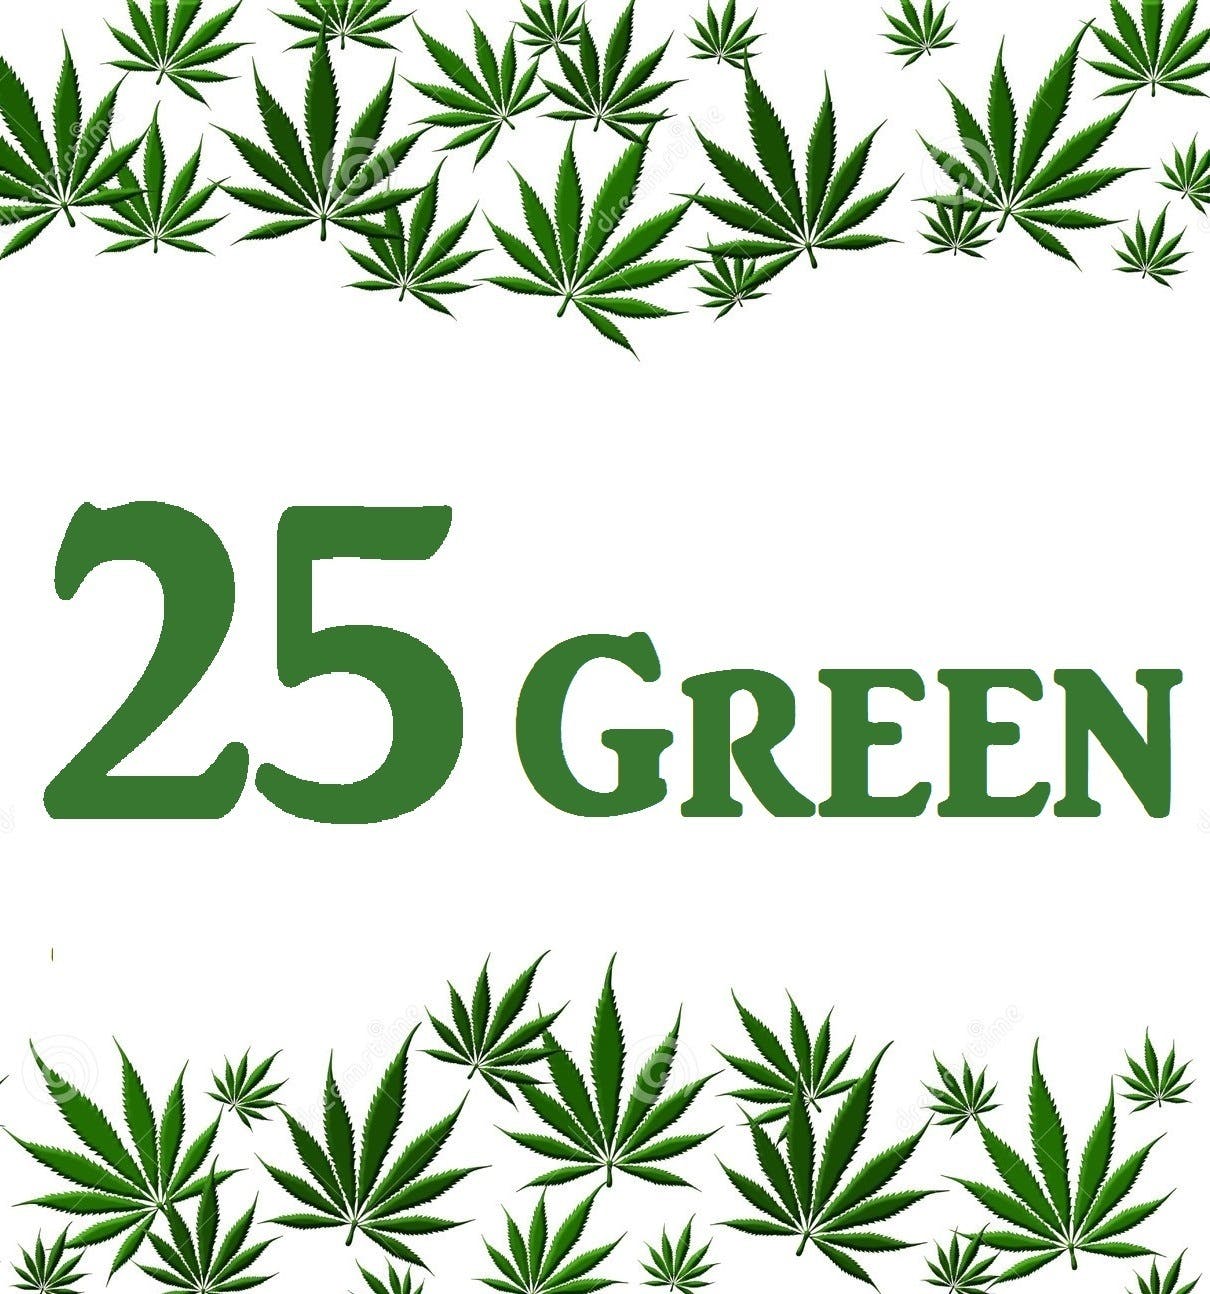 25 GREEN - Medical Marijuana Doctors - Cannabizme.com